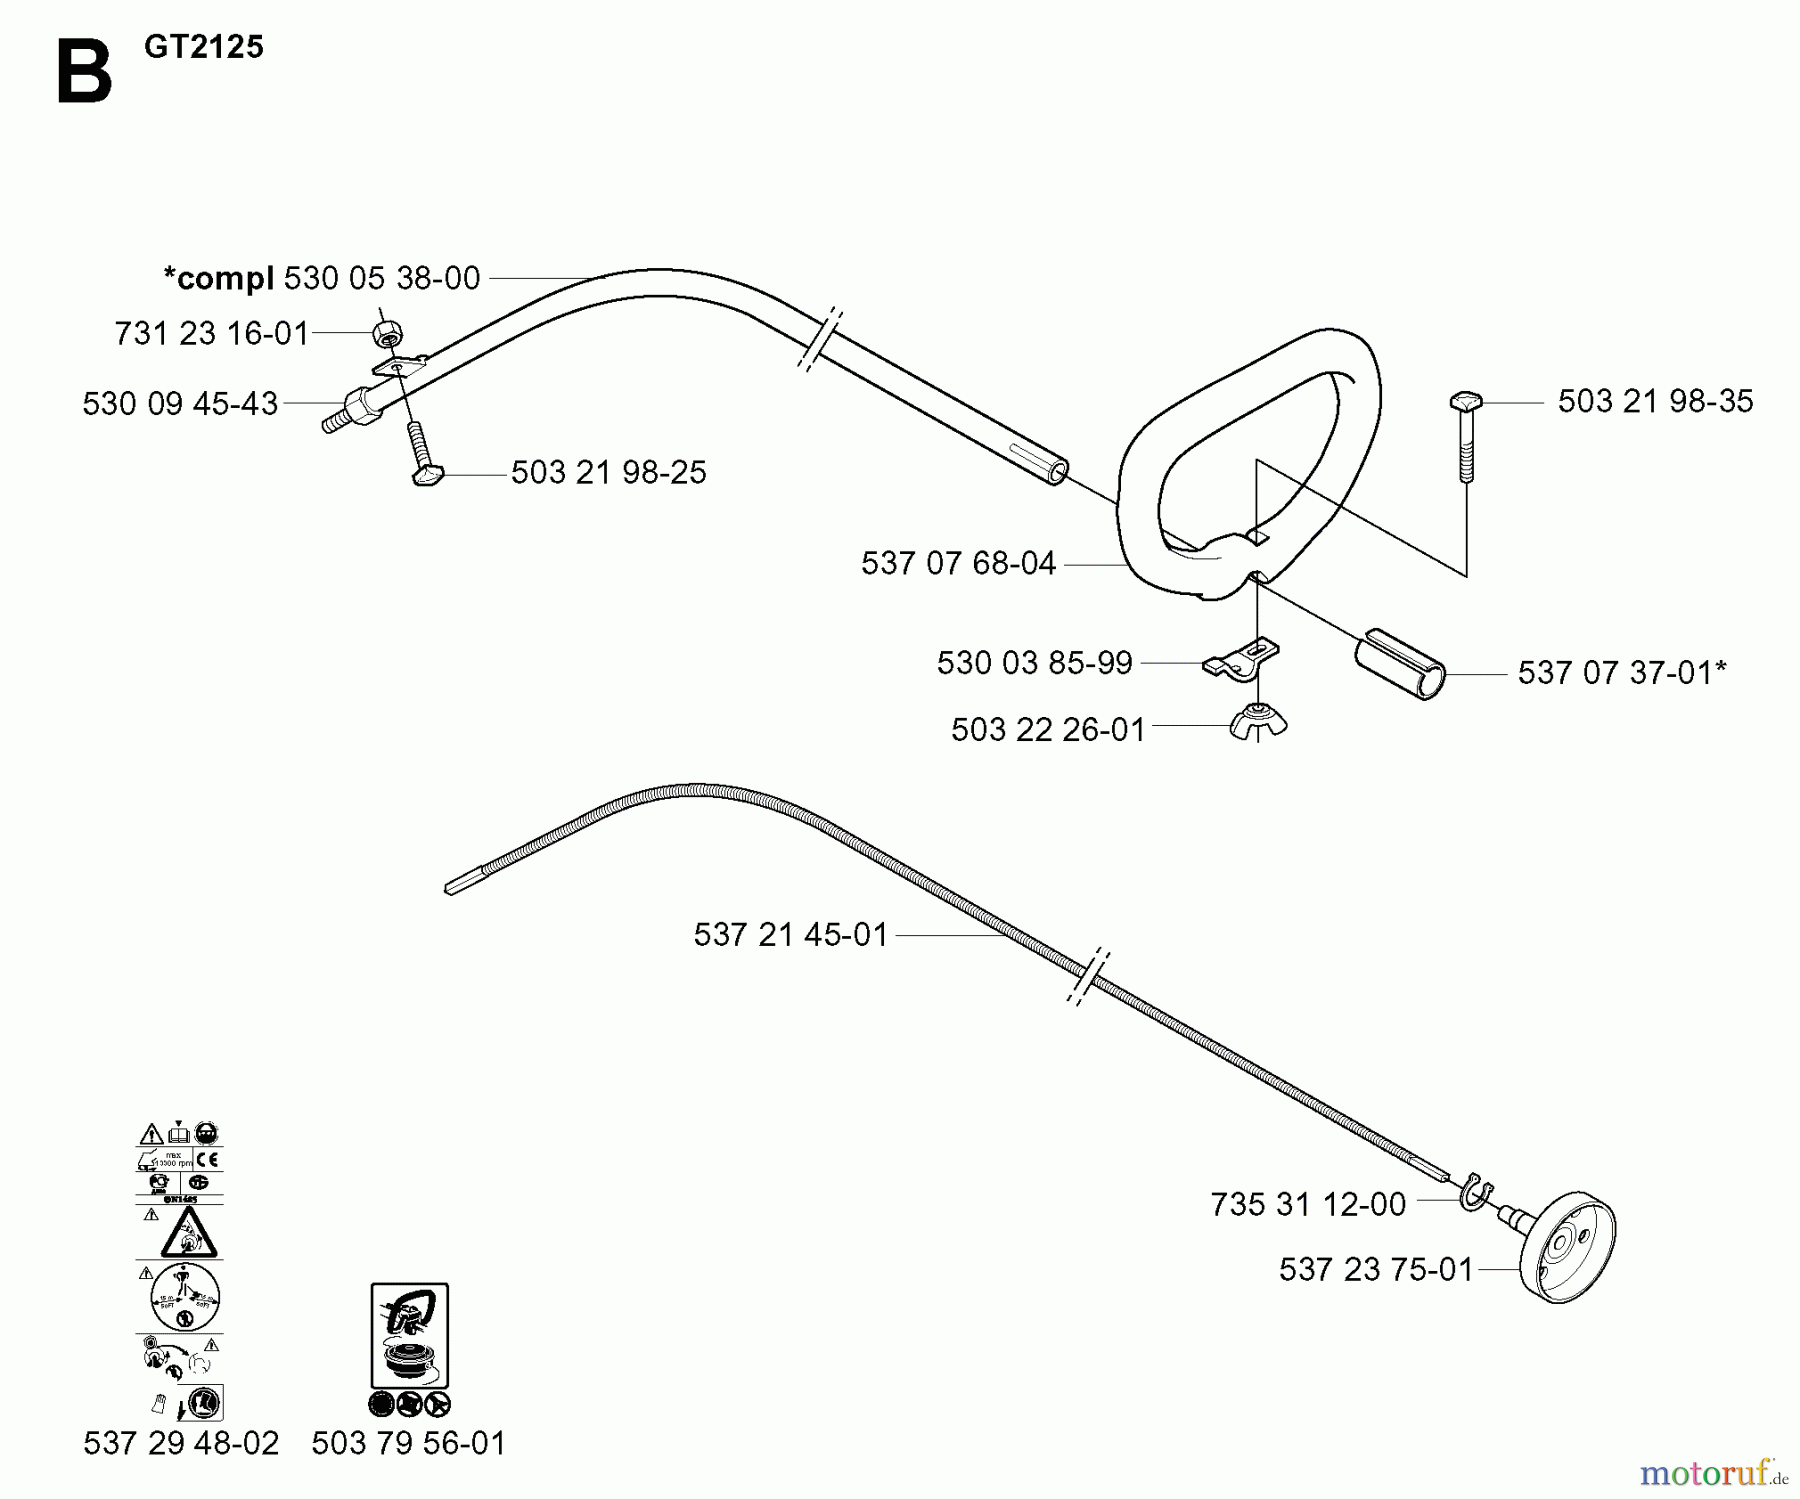  Jonsered Motorsensen, Trimmer GC2125 - Jonsered String/Brush Trimmer (2005-01) SHAFT HANDLE #1